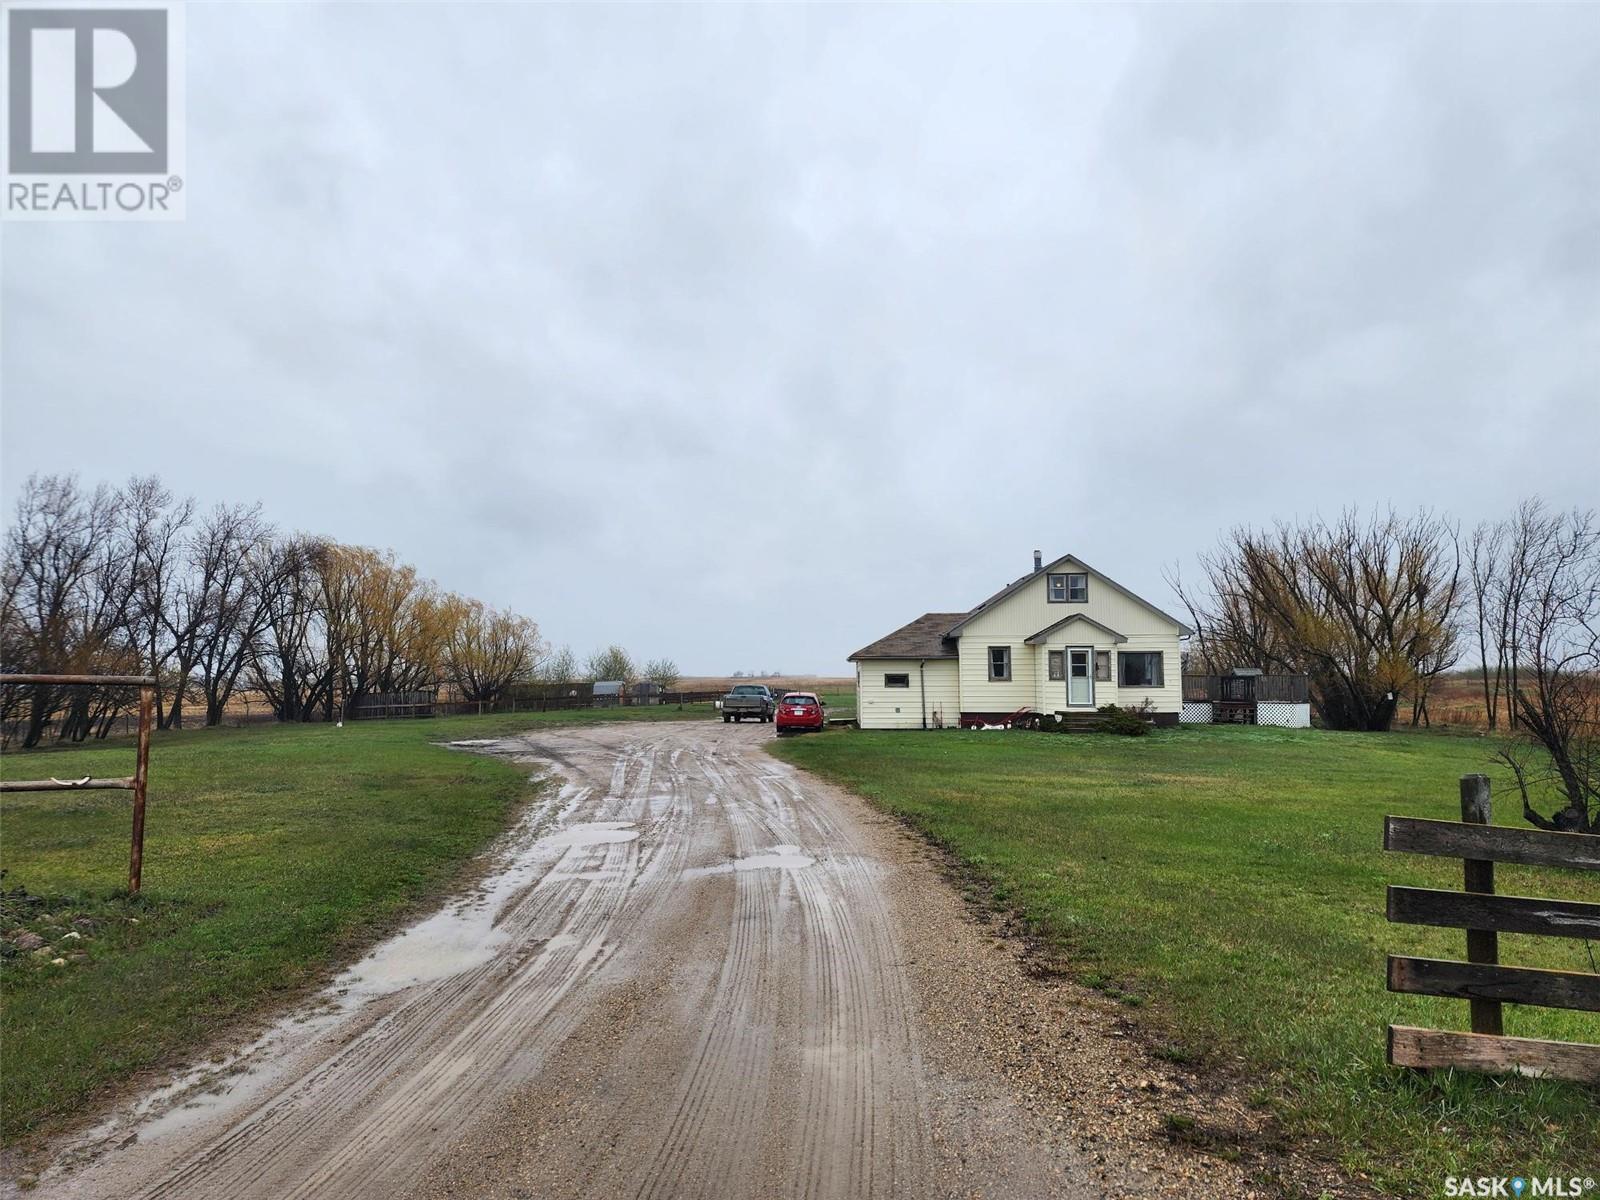 THREE K FARMS 9.97 acres SW 08-16-10 W2nd, wolseley rm no. 155, Saskatchewan